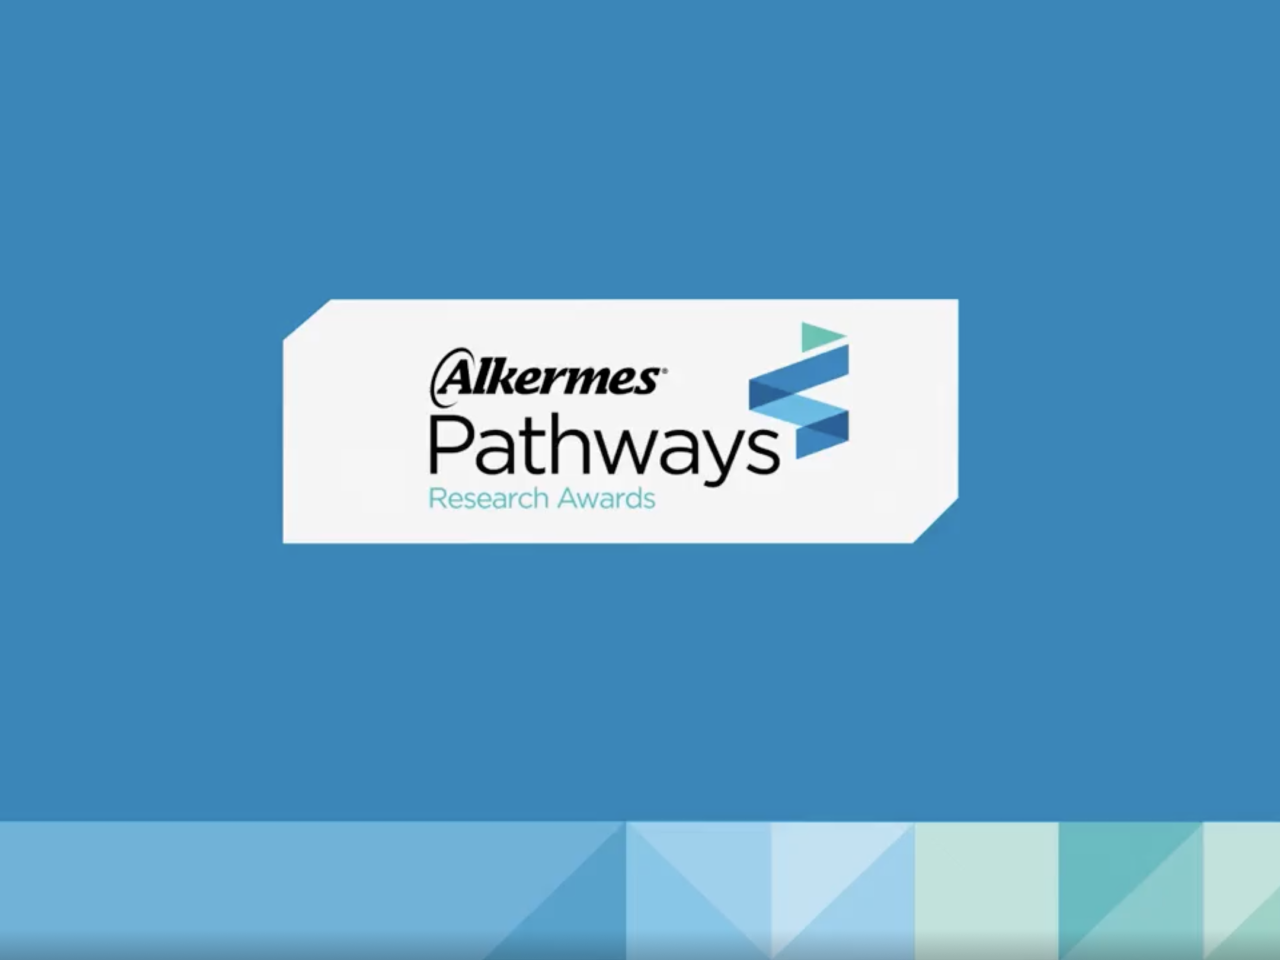 Alkermes Pathways